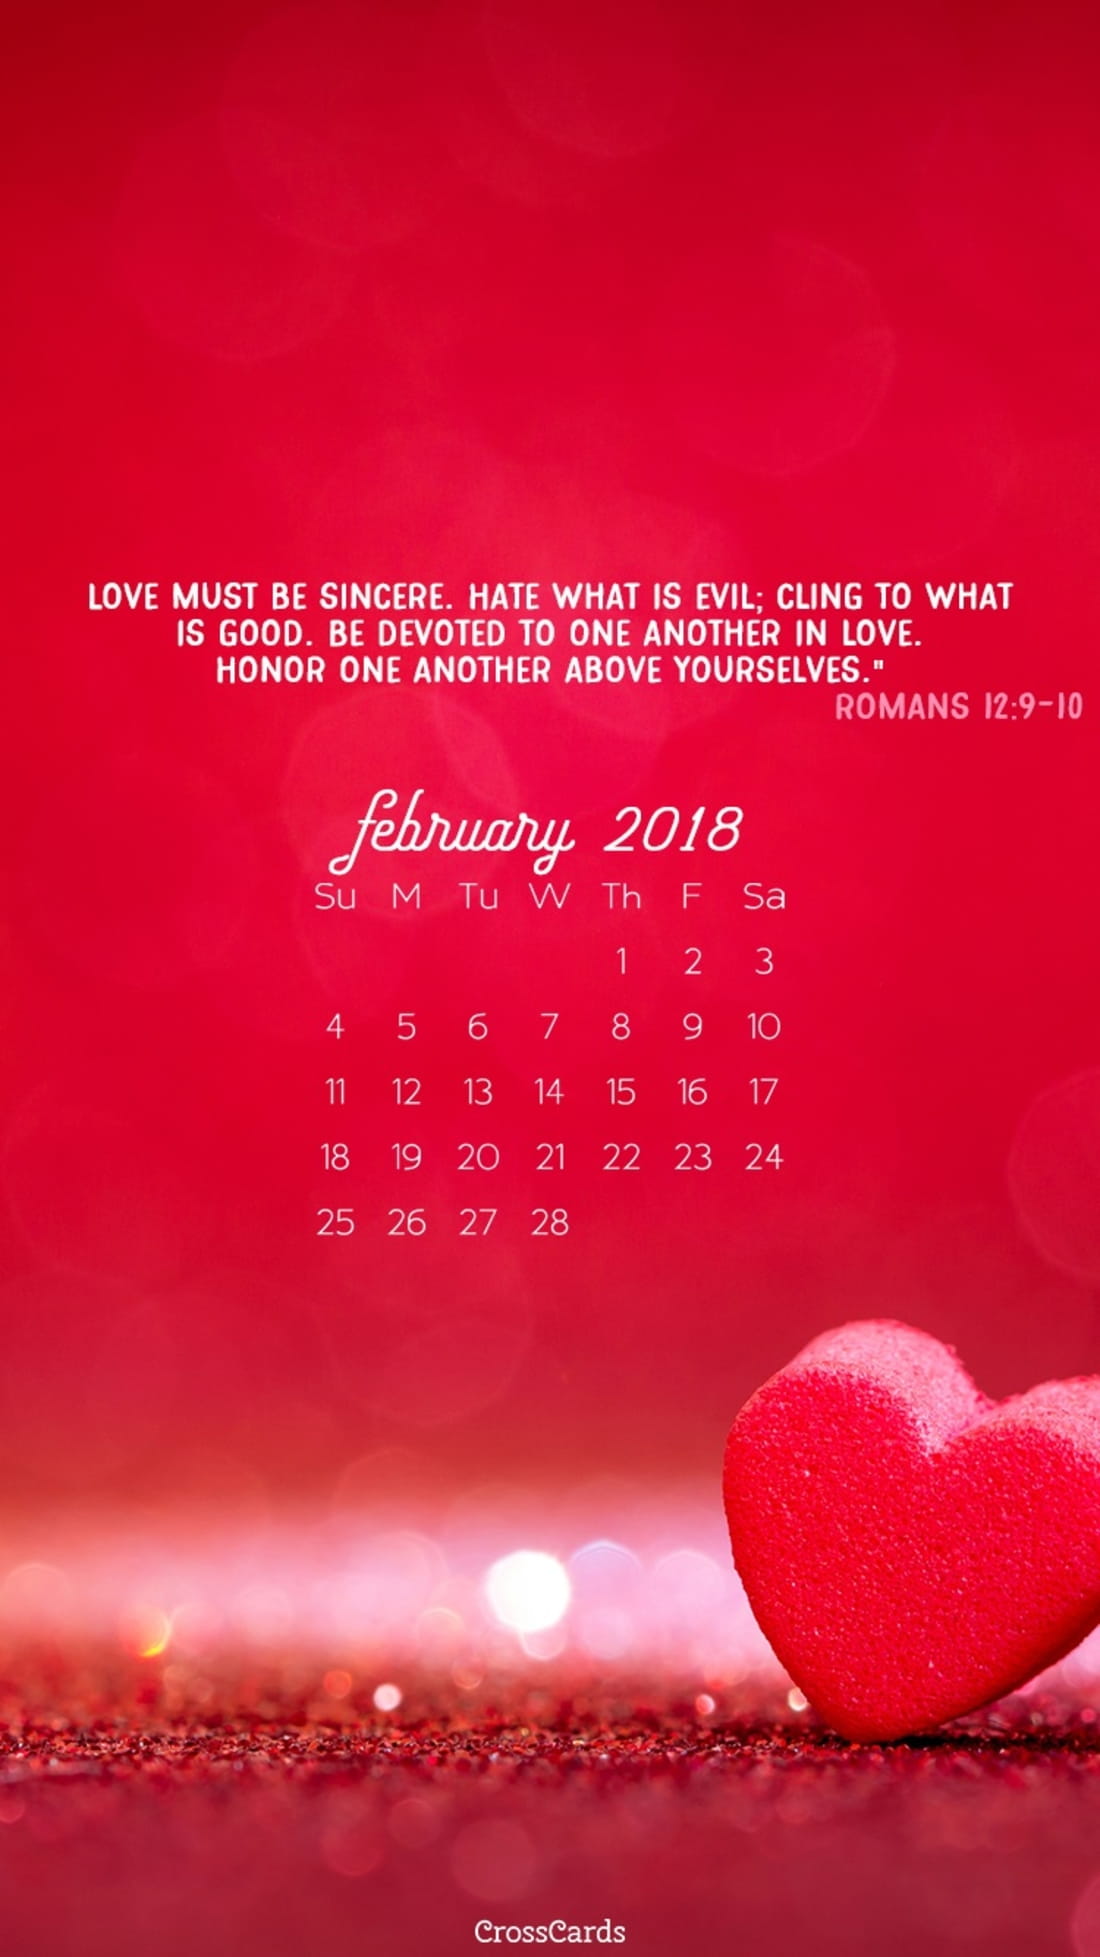 February 2018 - Romans 12:9-10 mobile phone wallpaper